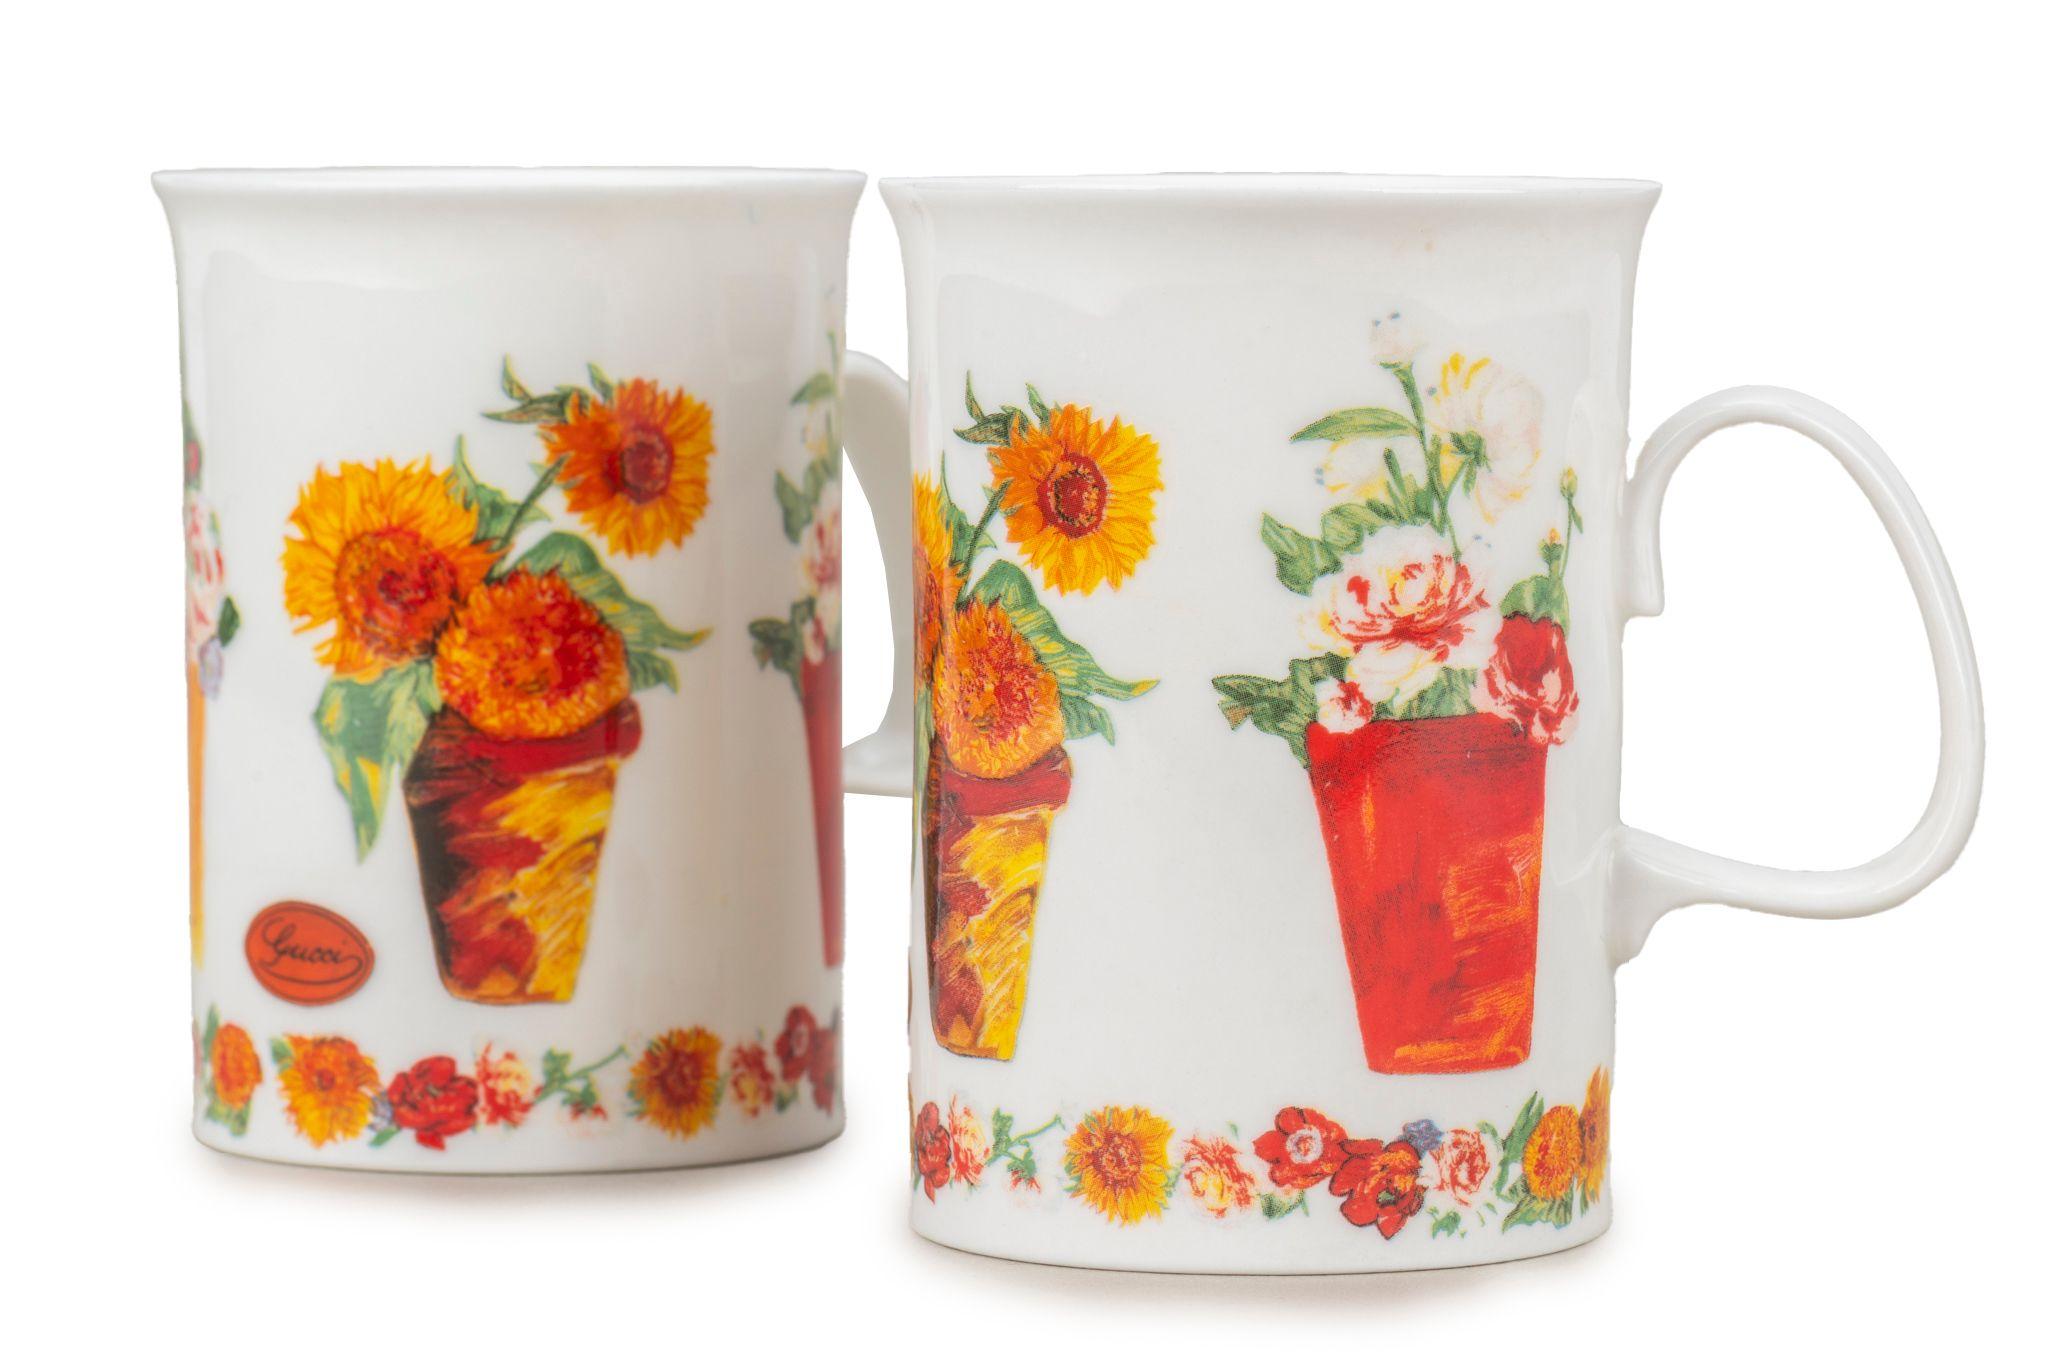 Beige Gucci Set/2 Porcelain Flower Vase Teacup For Sale